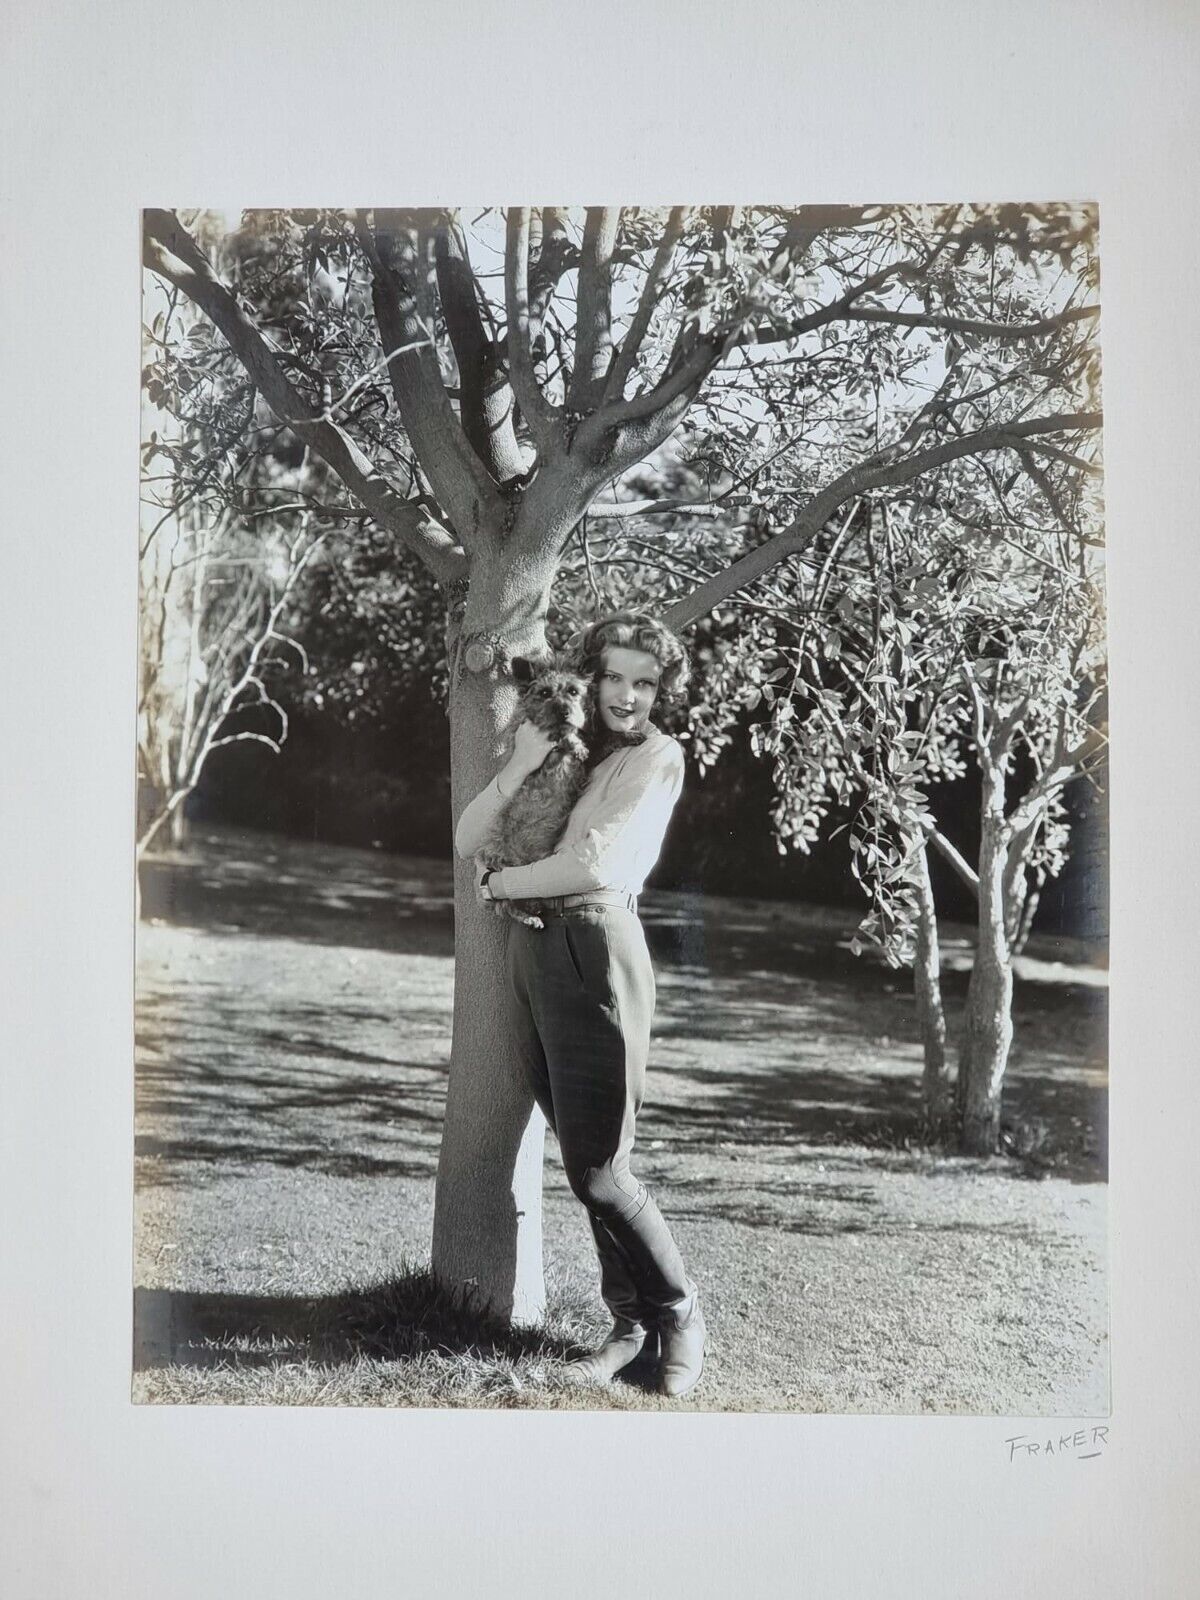 Actress Elissa Landi 1930s Beautiful Emotional WILLIAM FRAKER SIGNED Photo 501 